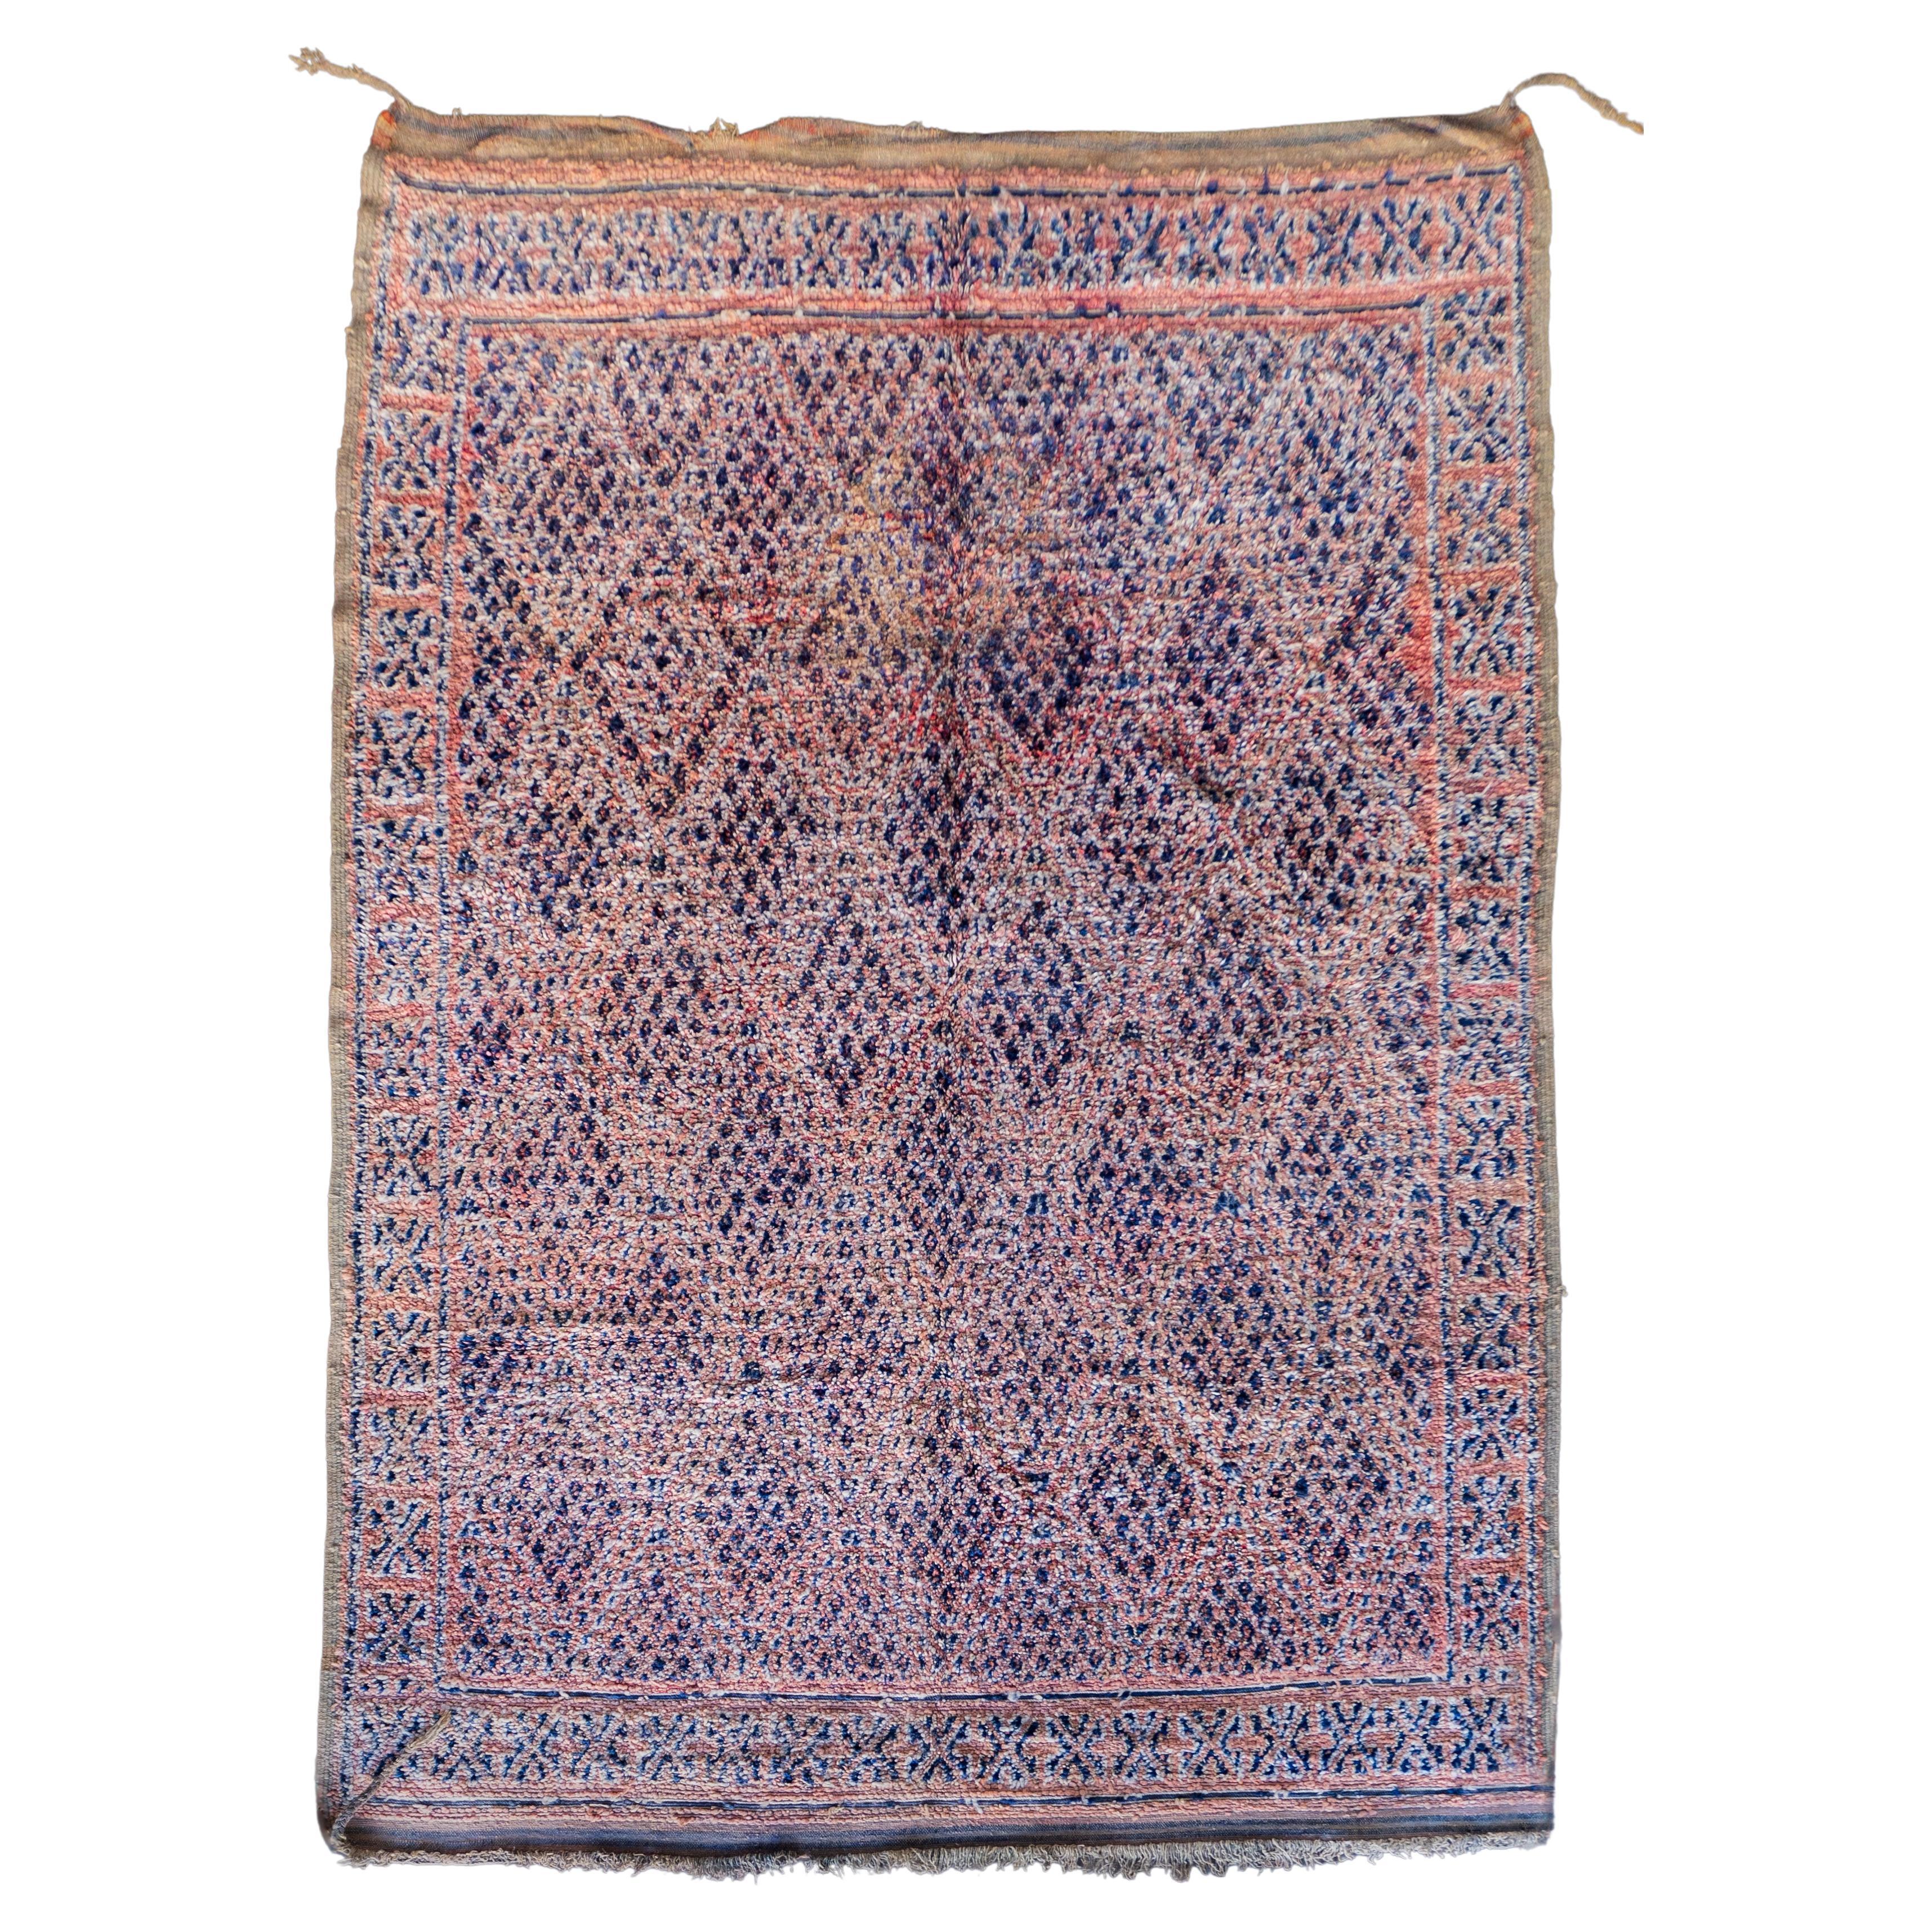 Tapis berbère marocain vintage des années 70  100% laine  7.3x10.8 Ft 224x330 cm